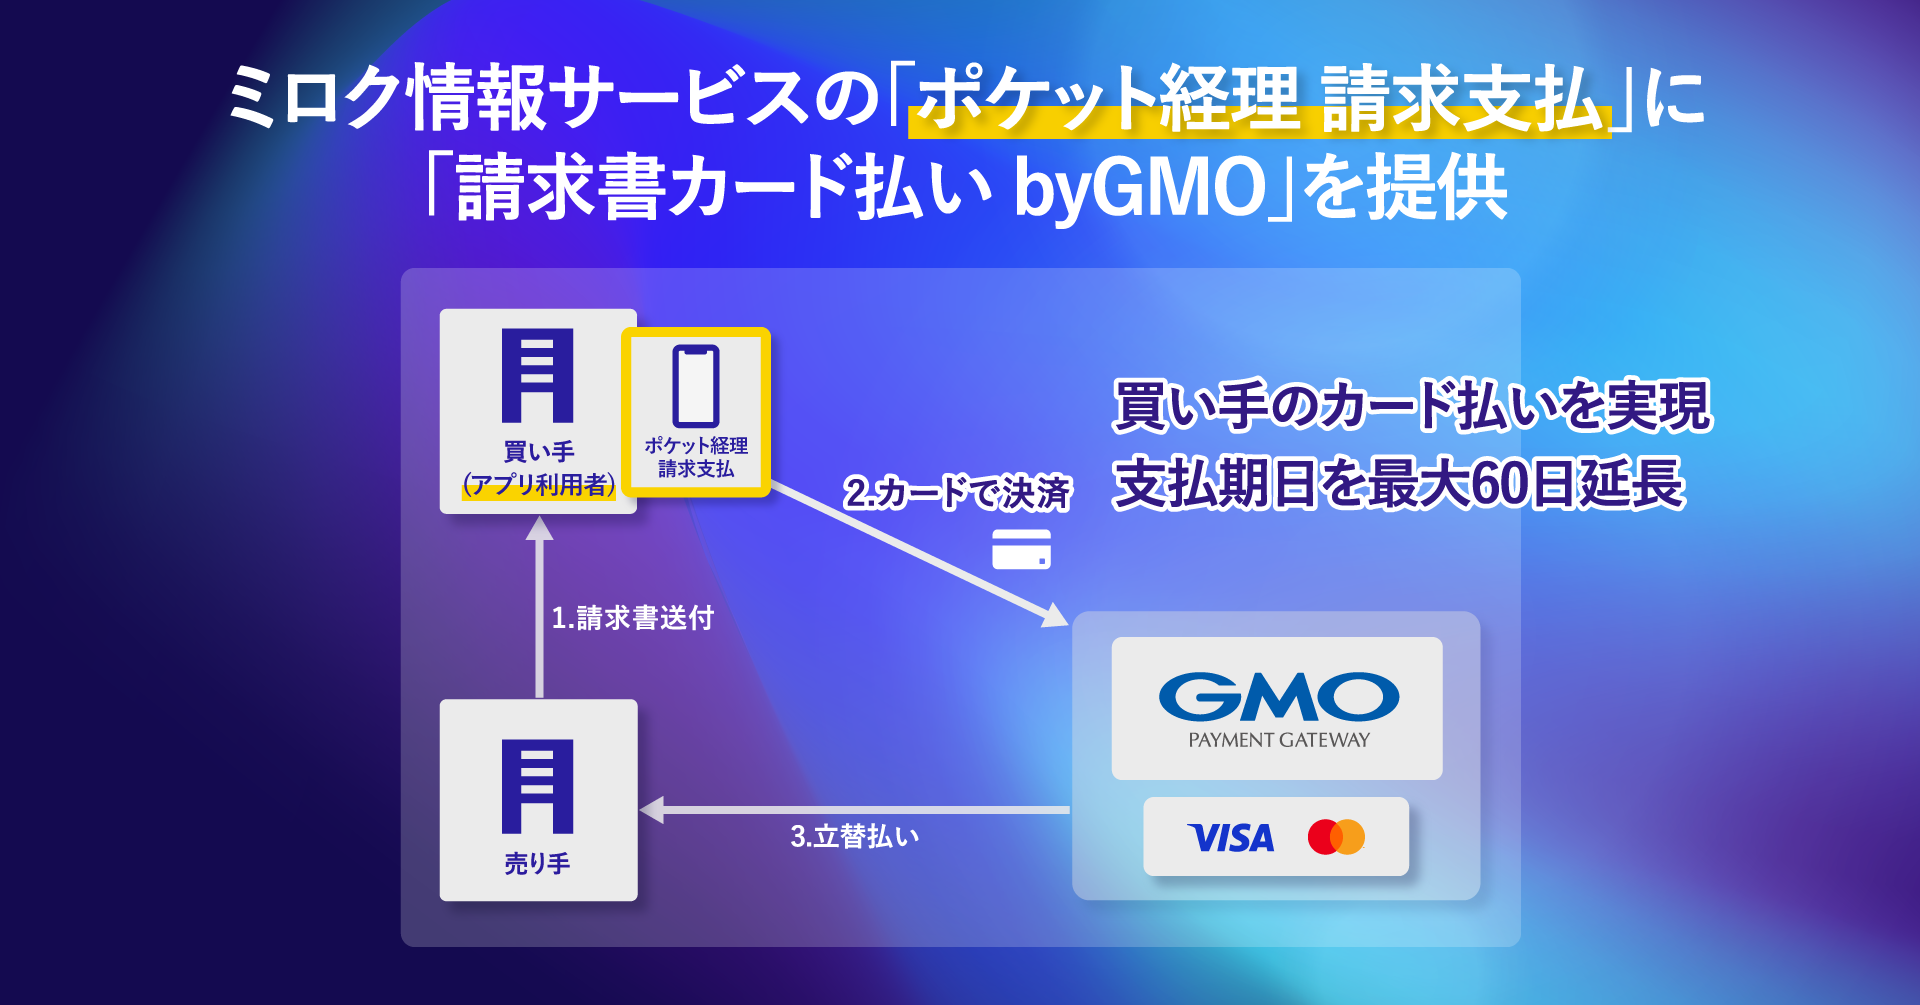 ミロク情報サービスの経理業務DXアプリに「請求書カード払い byGMO」を提供